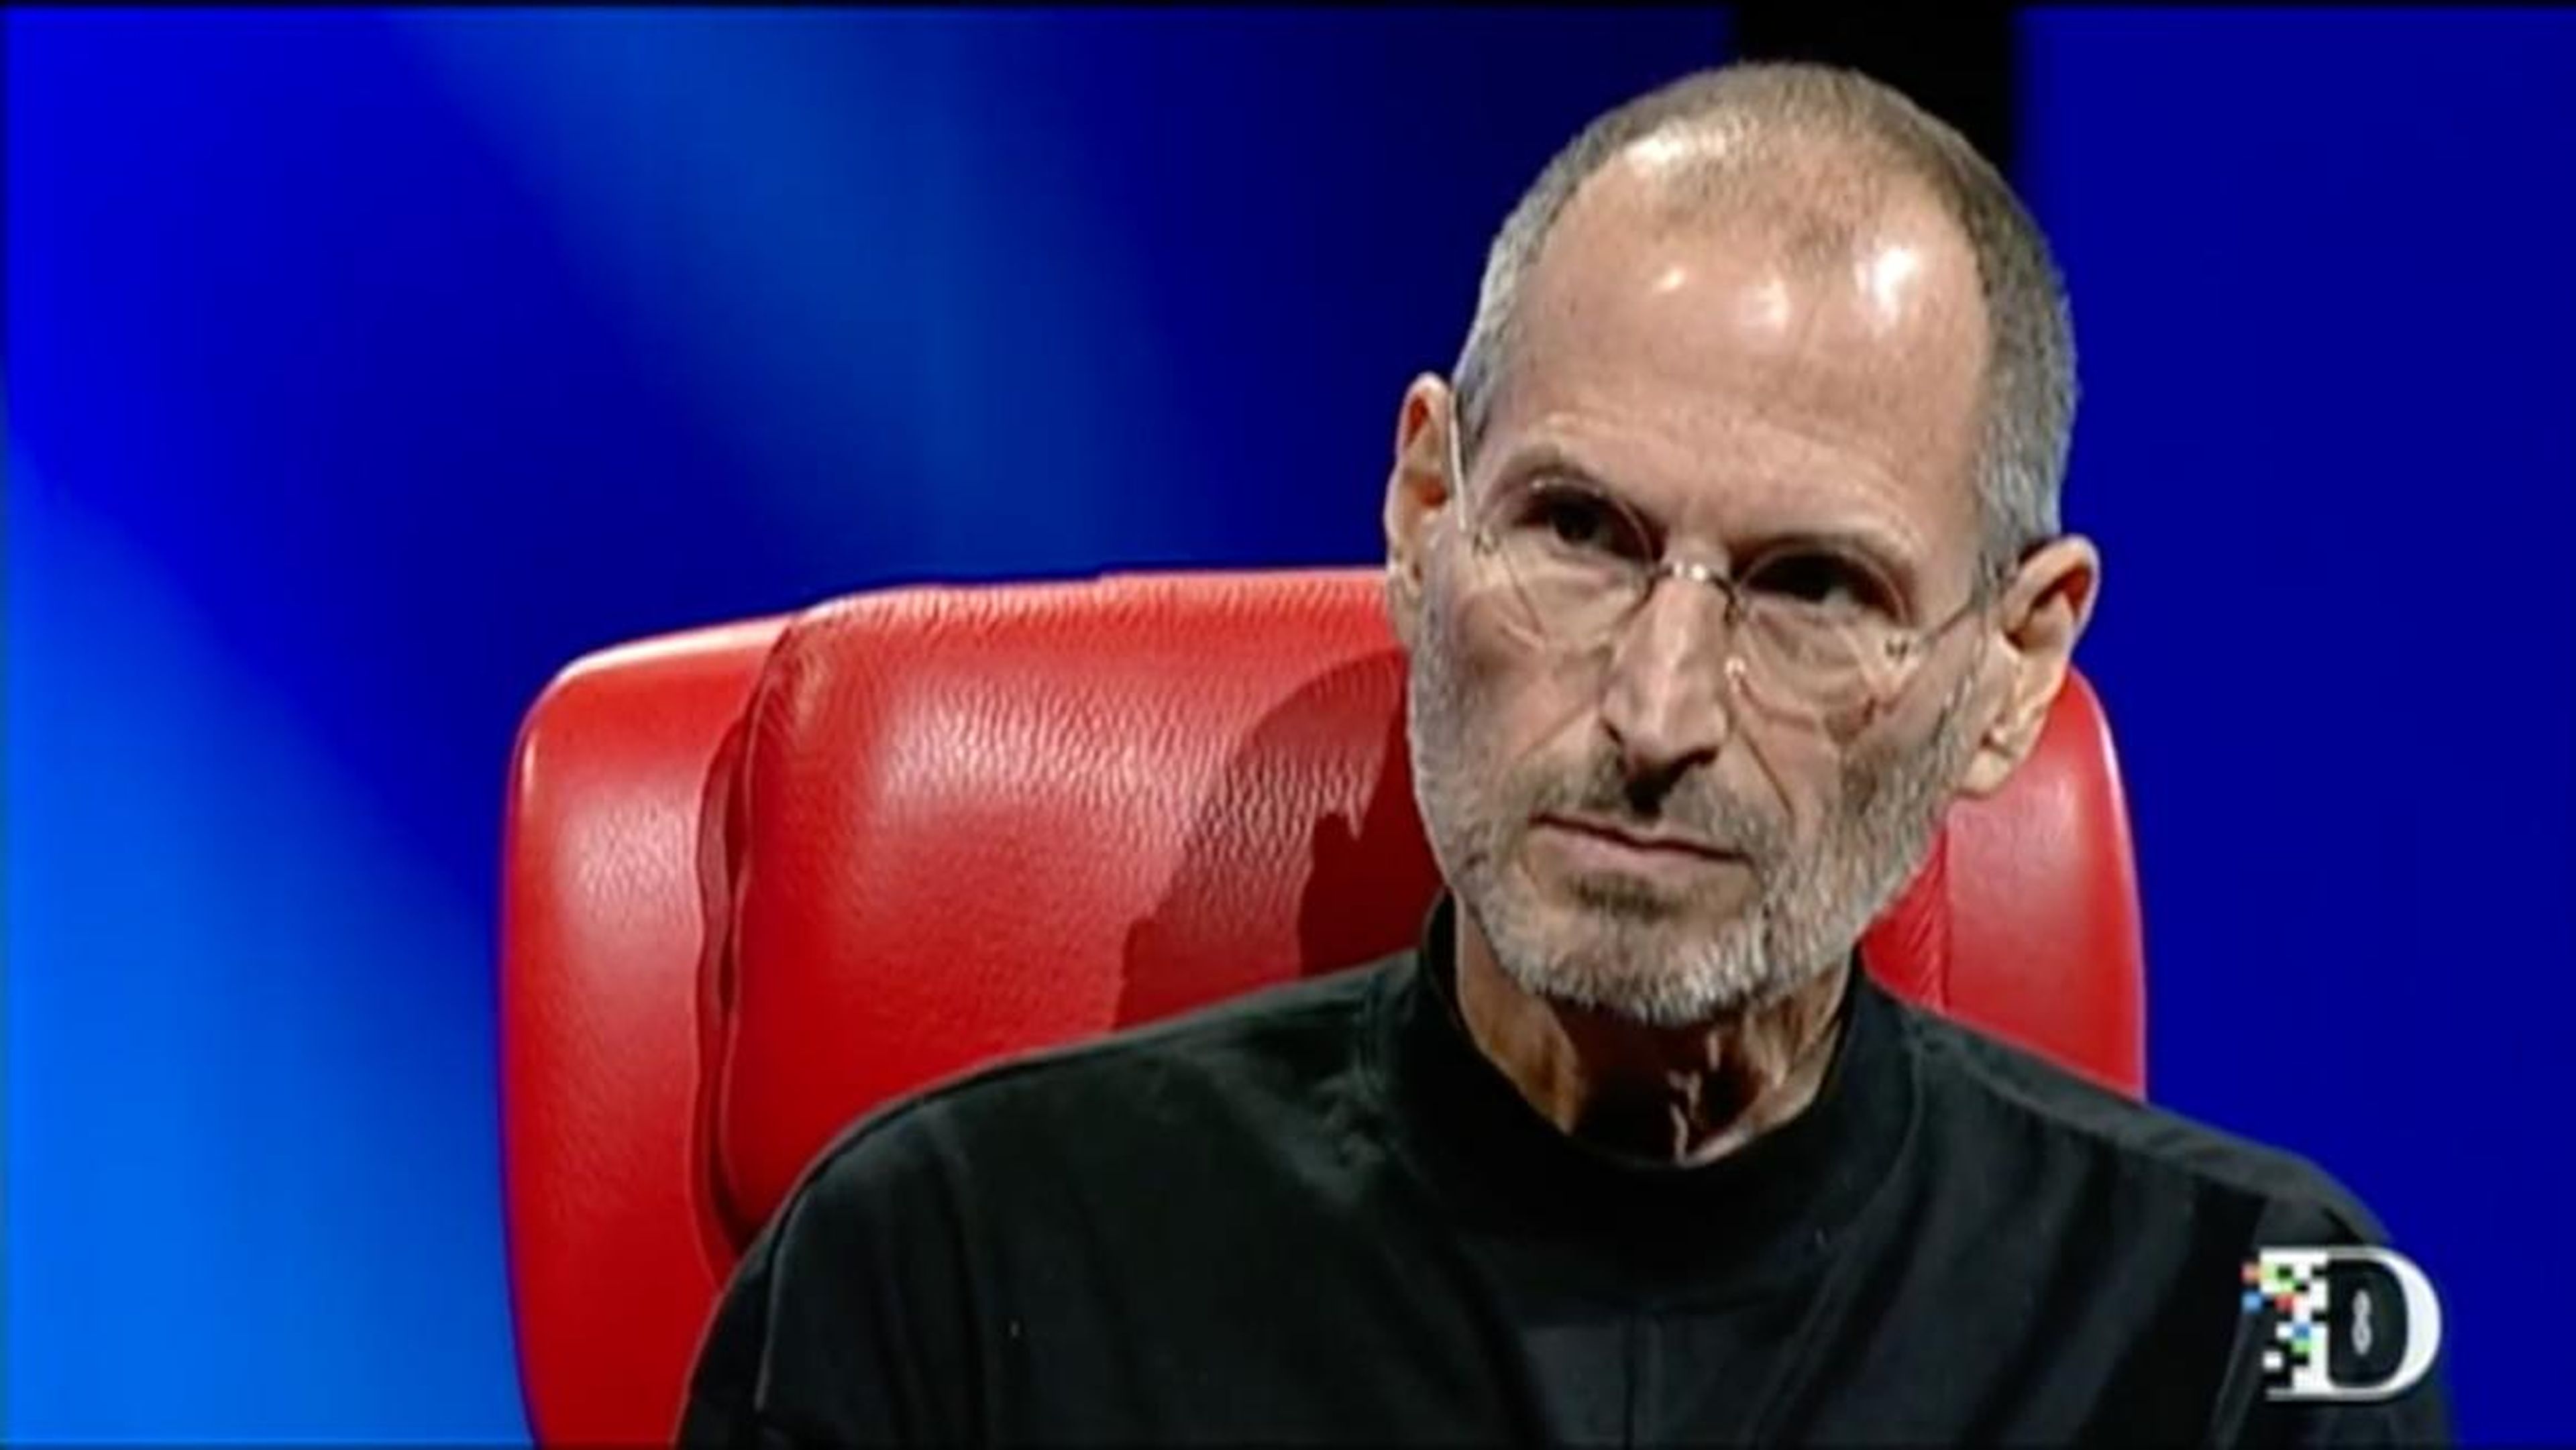 Hace tiempo que se sabe que el cofundador de Apple, Steve Jobs, trató a la gente cruelmente, pero la nueva autobiografía de su hija ofrece nuevos detalles.